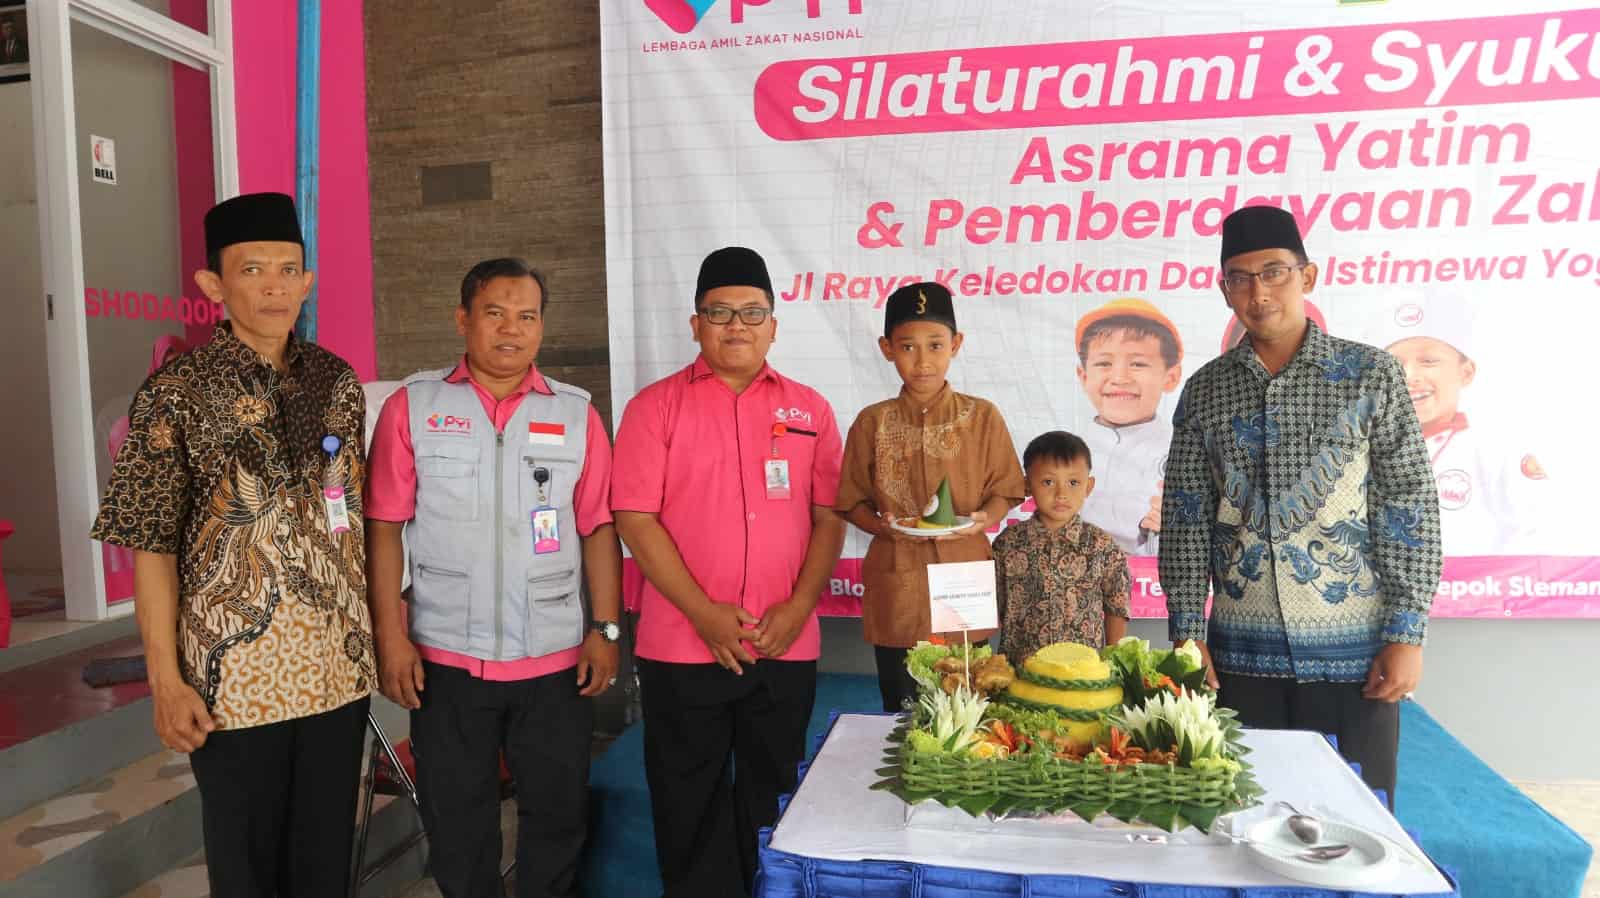 Asrama Yatim dan Pemberdayaan Zakat PYI Resmi di Buka di Sleman, Yogyakarta